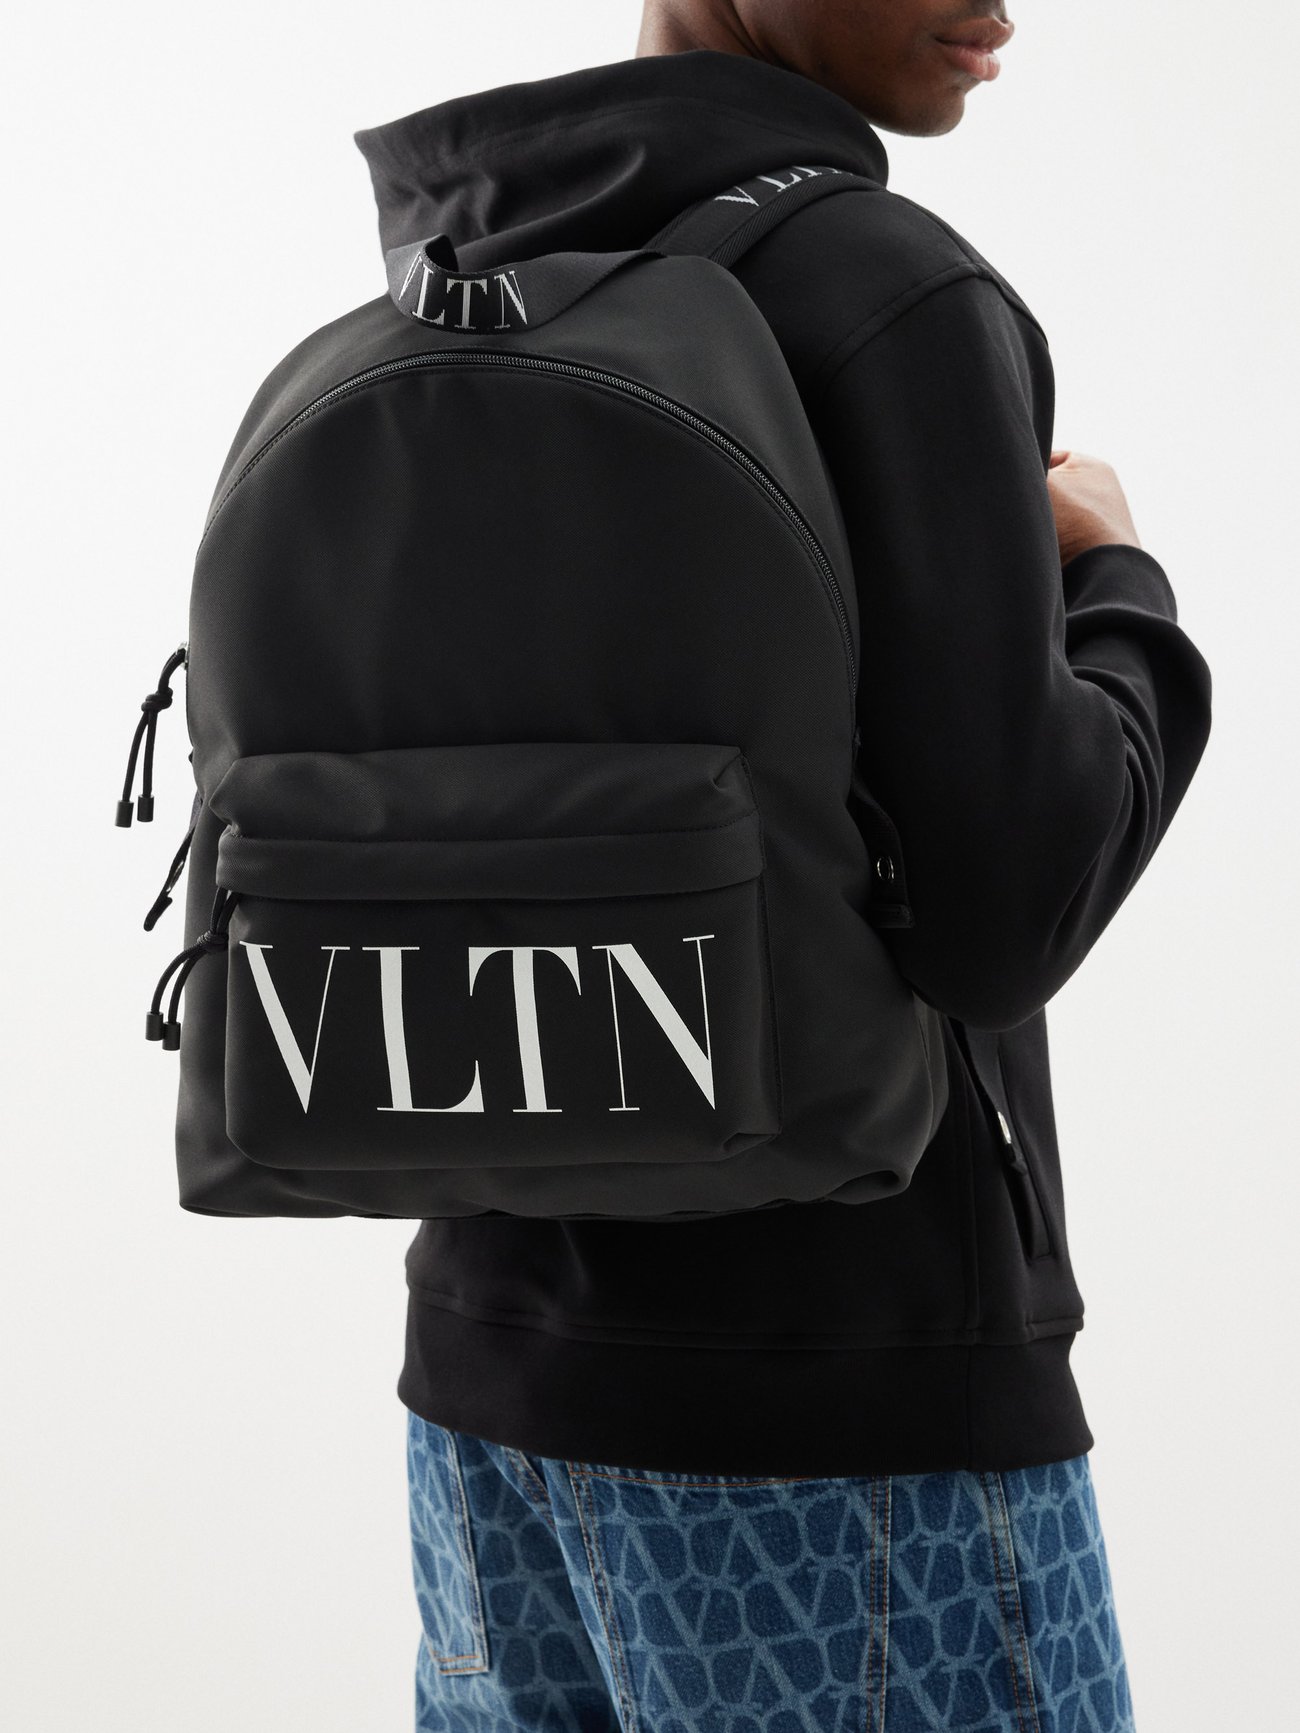 Black VLTN nylon backpack | Valentino Garavani | MATCHES UK